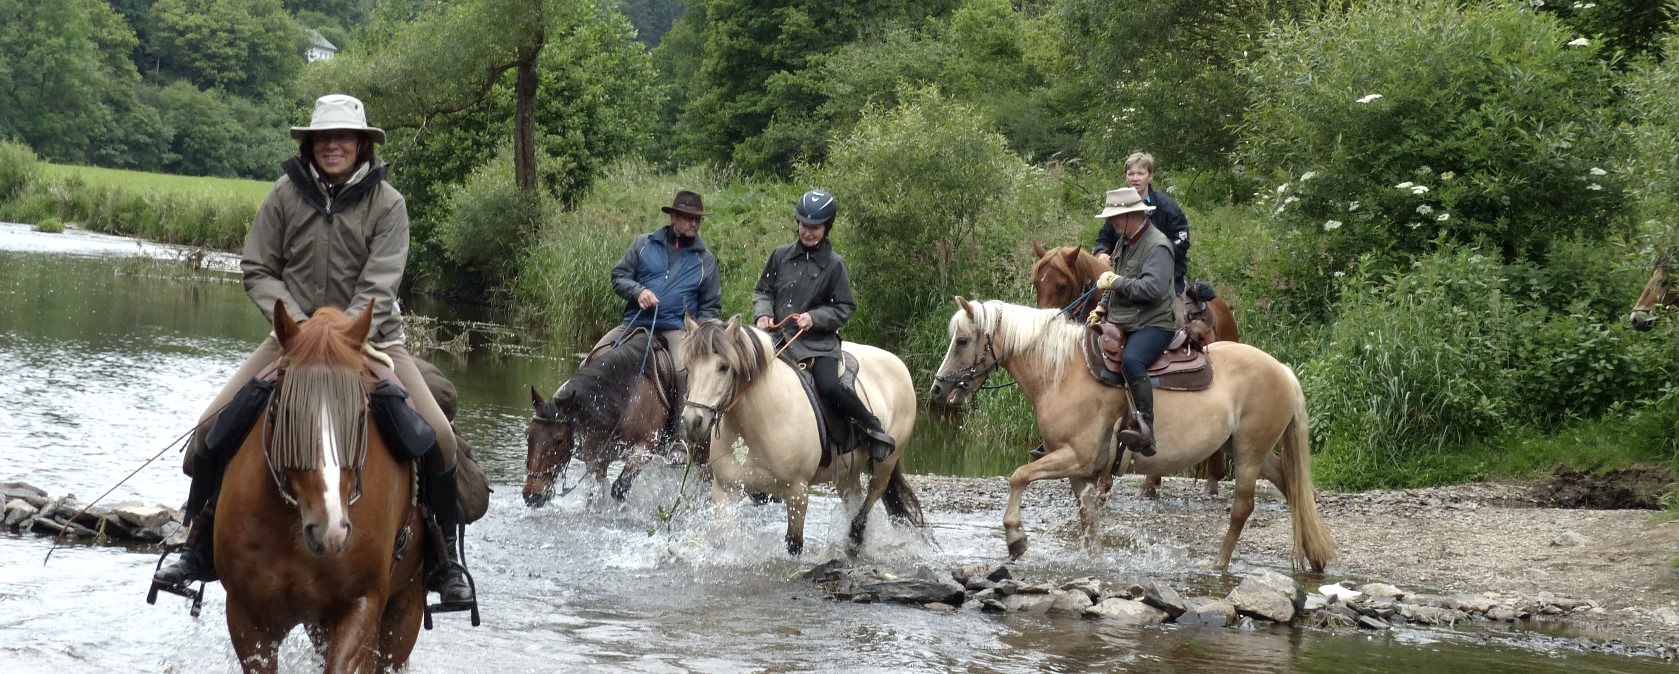 Eifel zu Pferd: Wanderreiten durch die Natur mit Flussdurchquerung, © Eifel zu Pferd e.V.